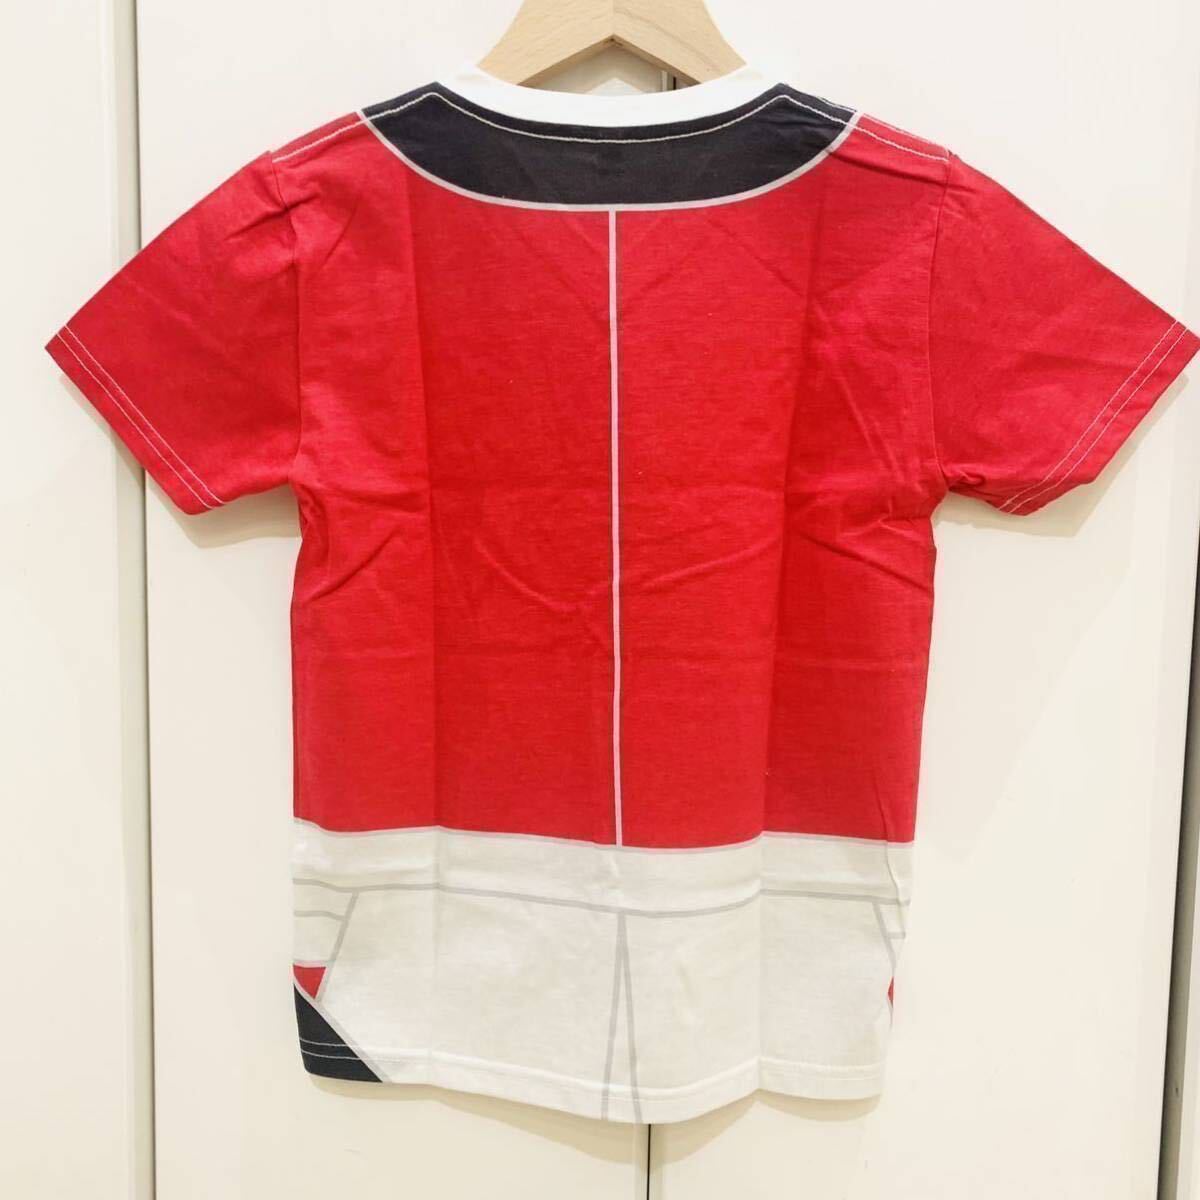  новый товар 2 шт. комплект SALE 130cm обычная цена 3,960 иен футболка samurai становится .. Kids хлопок 100% японский стиль ребенок мужчина 